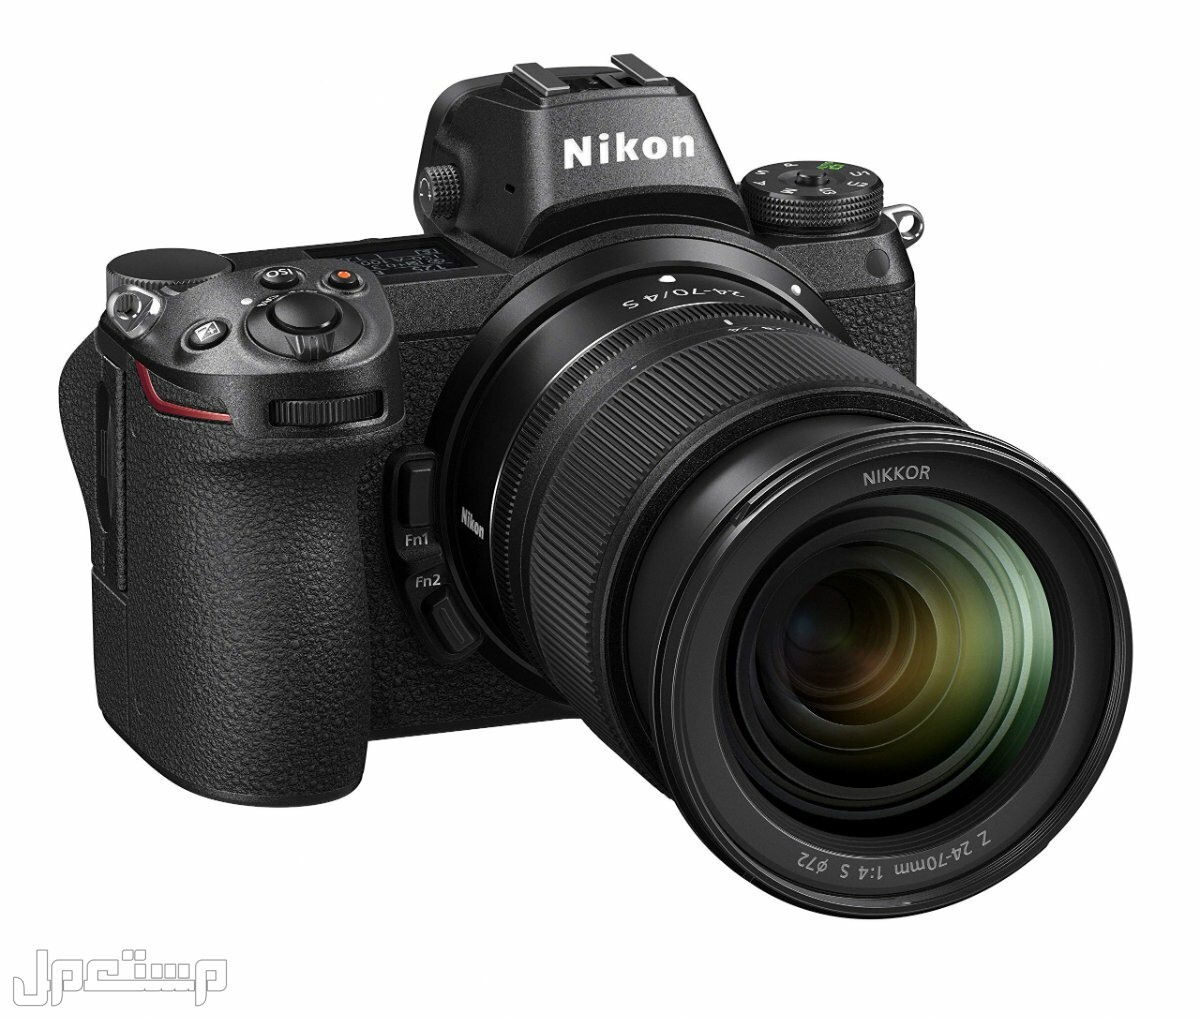 مواصفات ومميزات وأسعار أفضل أنواع كاميرات نيكون للمحترفين في قطر كاميرا Nikon Z6